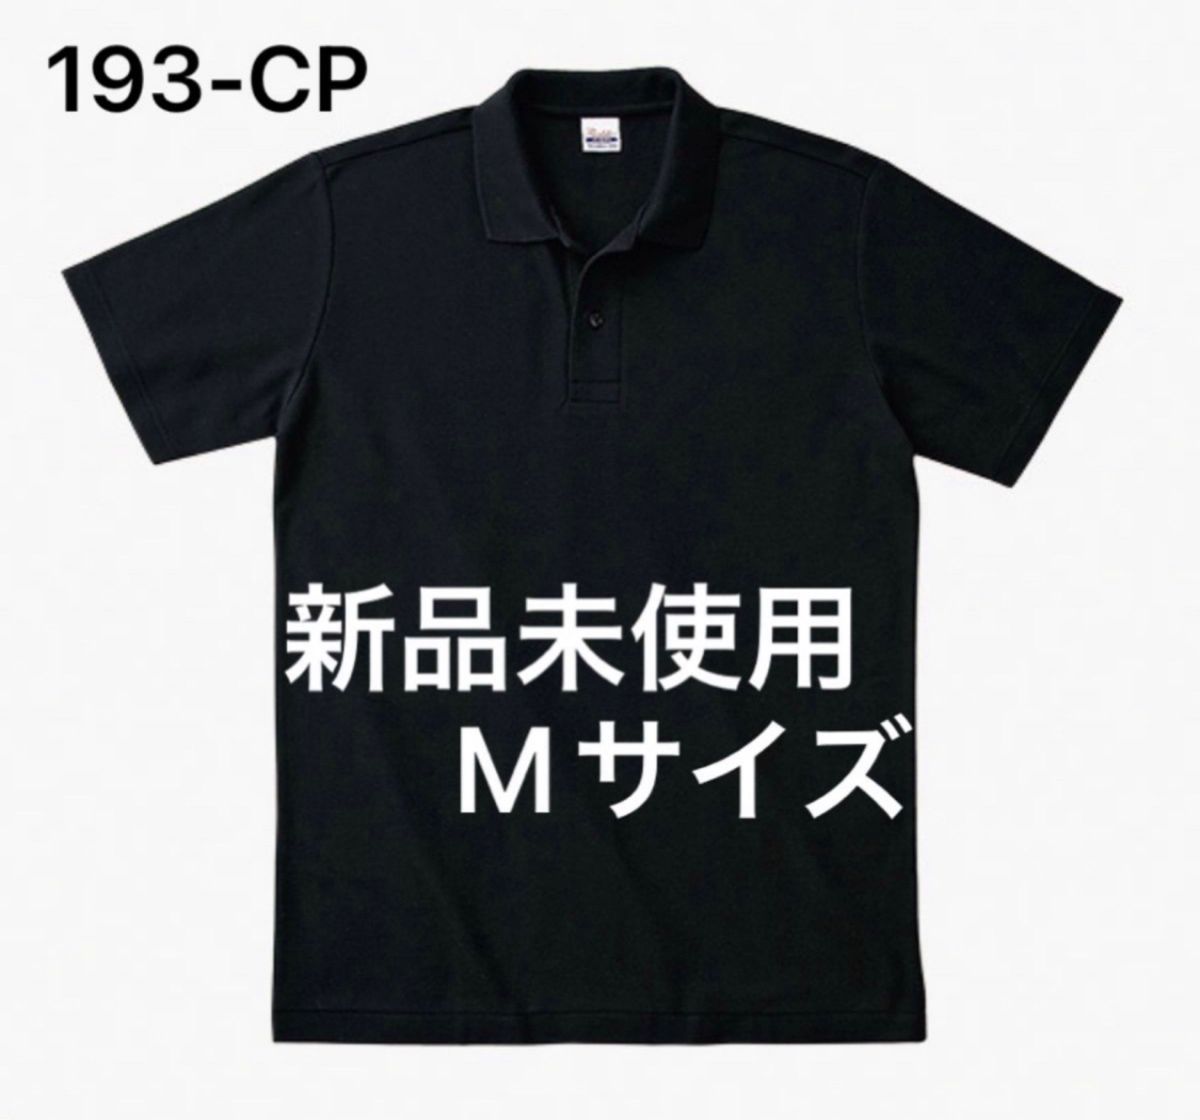 ポロシャツ 鹿の子 半袖 printstar【193-CP】M ブラック【65】